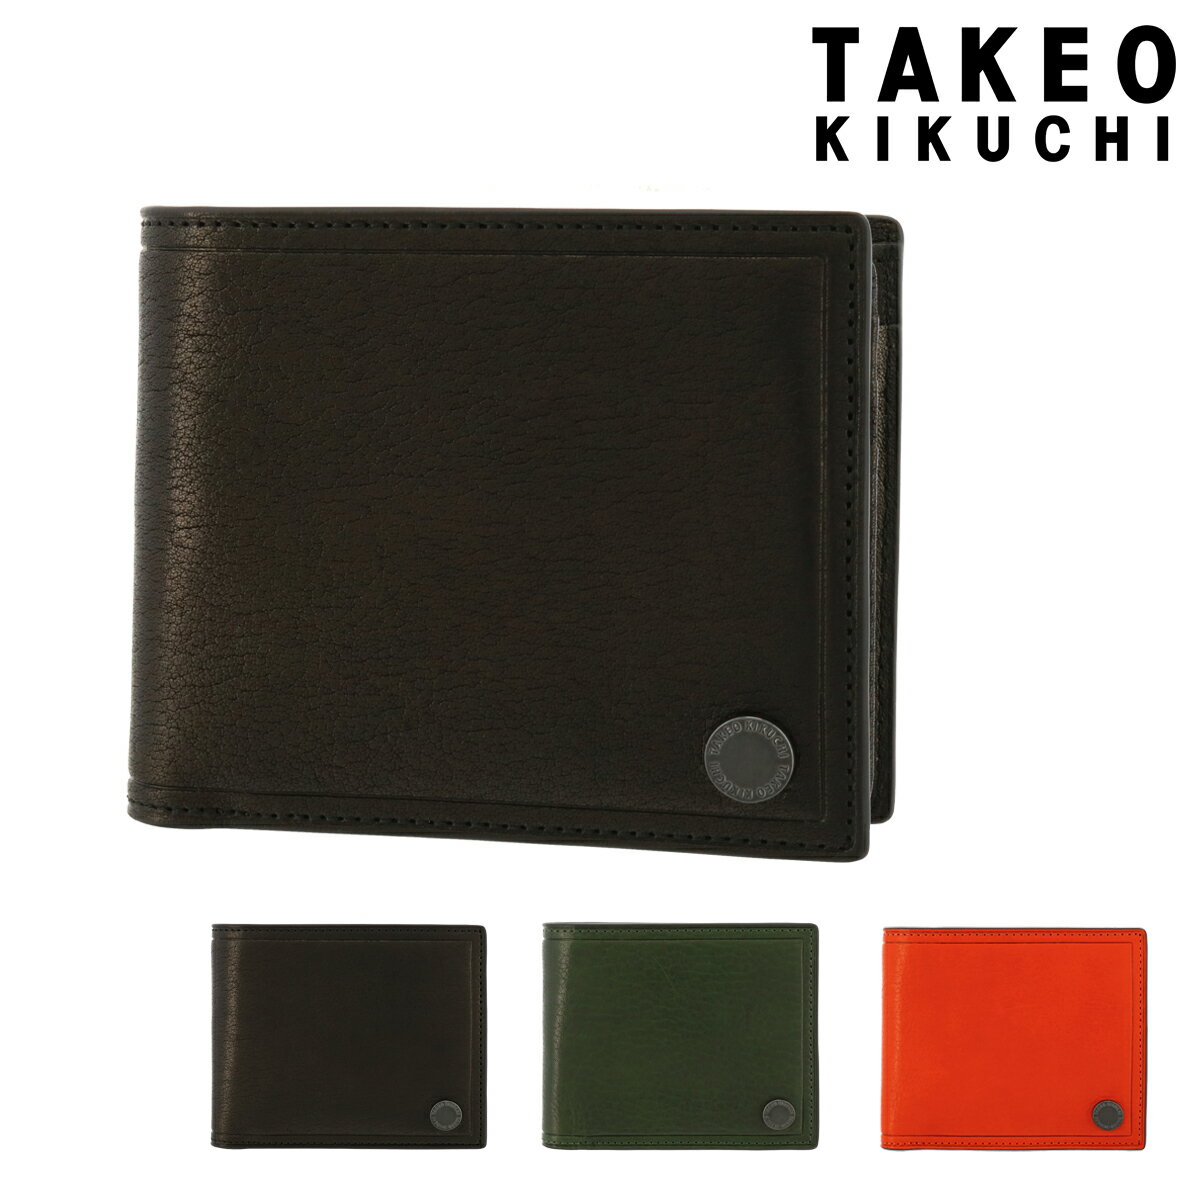 タケオキクチ 二つ折り財布 本革 コイン 730615 メンズTAKEO KIKUCHI | ミニ財布 牛革 レザー